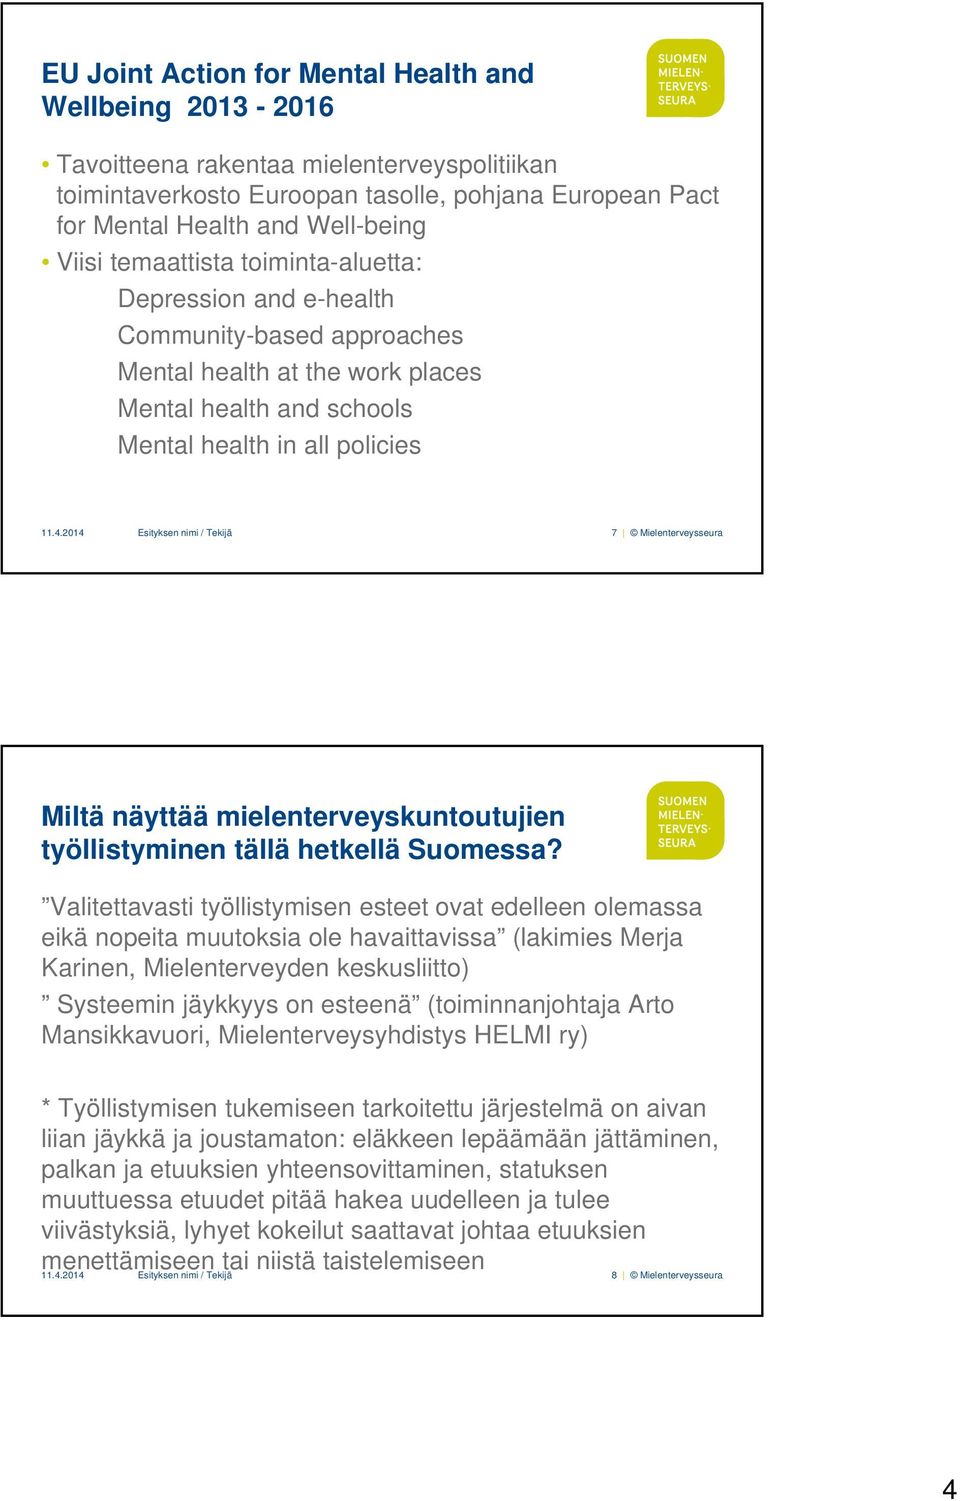 2014 Esityksen nimi / Tekijä 7 Mielenterveysseura Miltä näyttää mielenterveyskuntoutujien työllistyminen tällä hetkellä Suomessa?